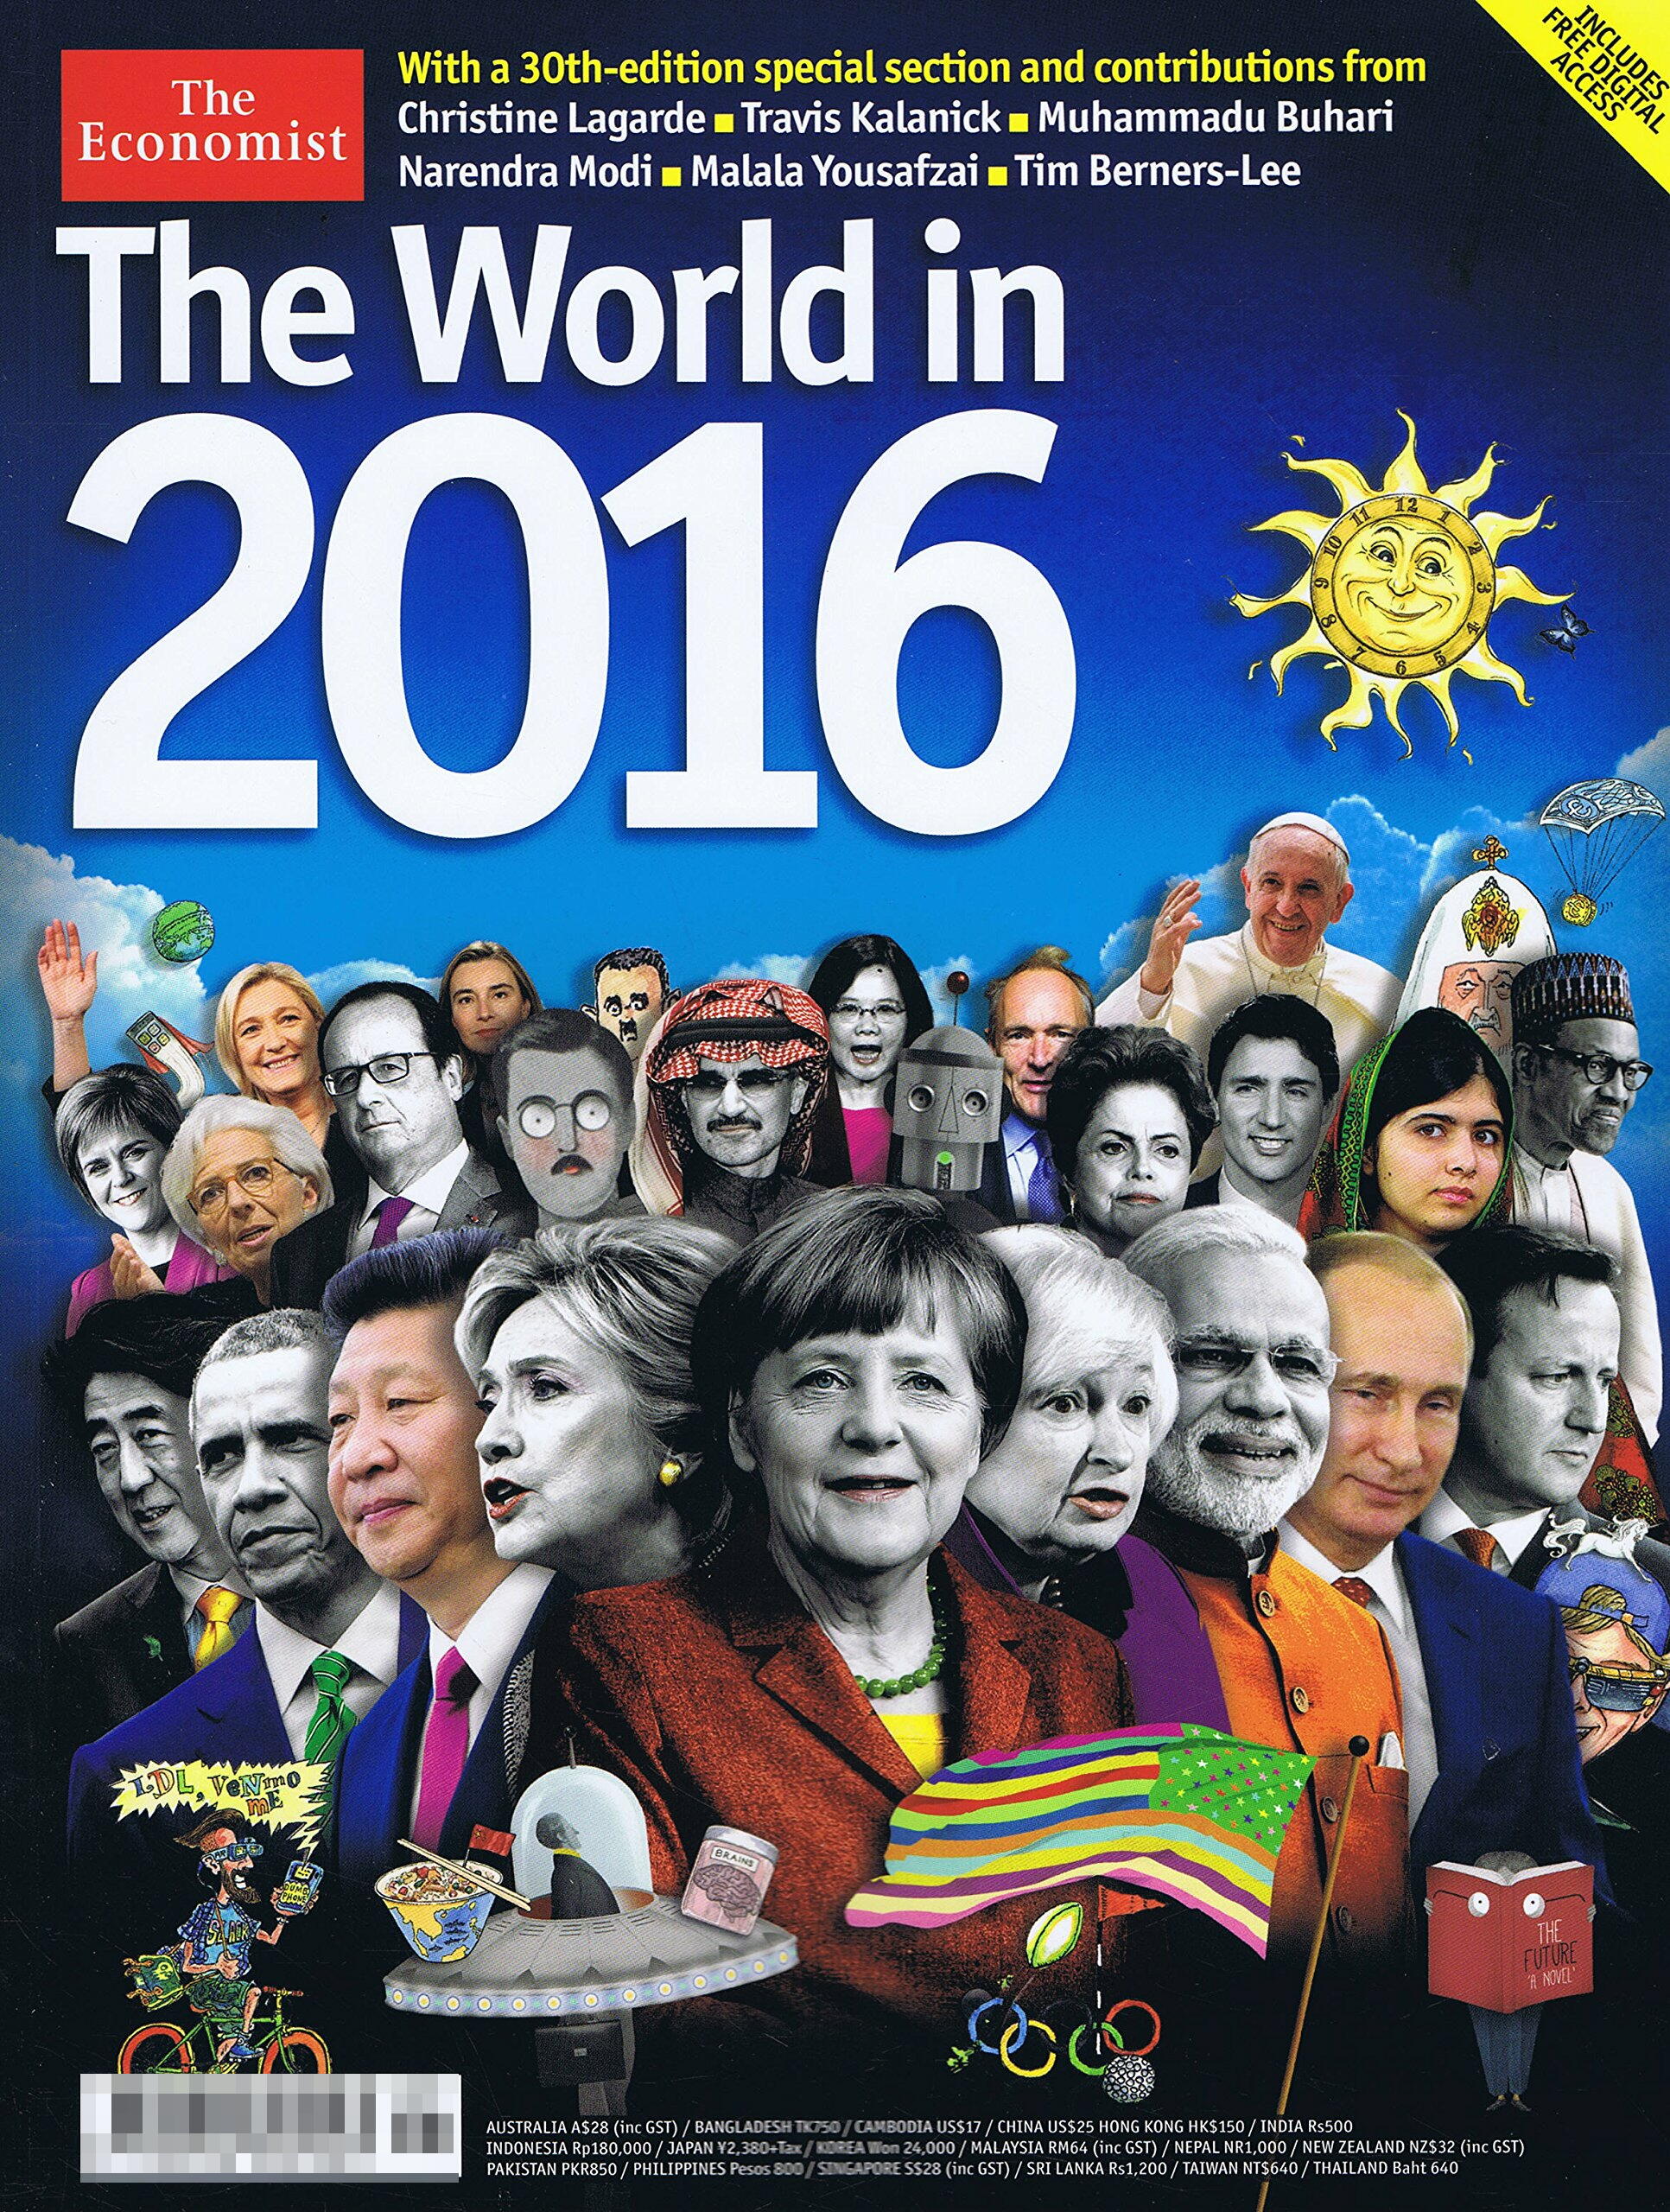 エコノミスト増刊号「2016 世界はこうなる」の表紙の解説 カレイドスコープ